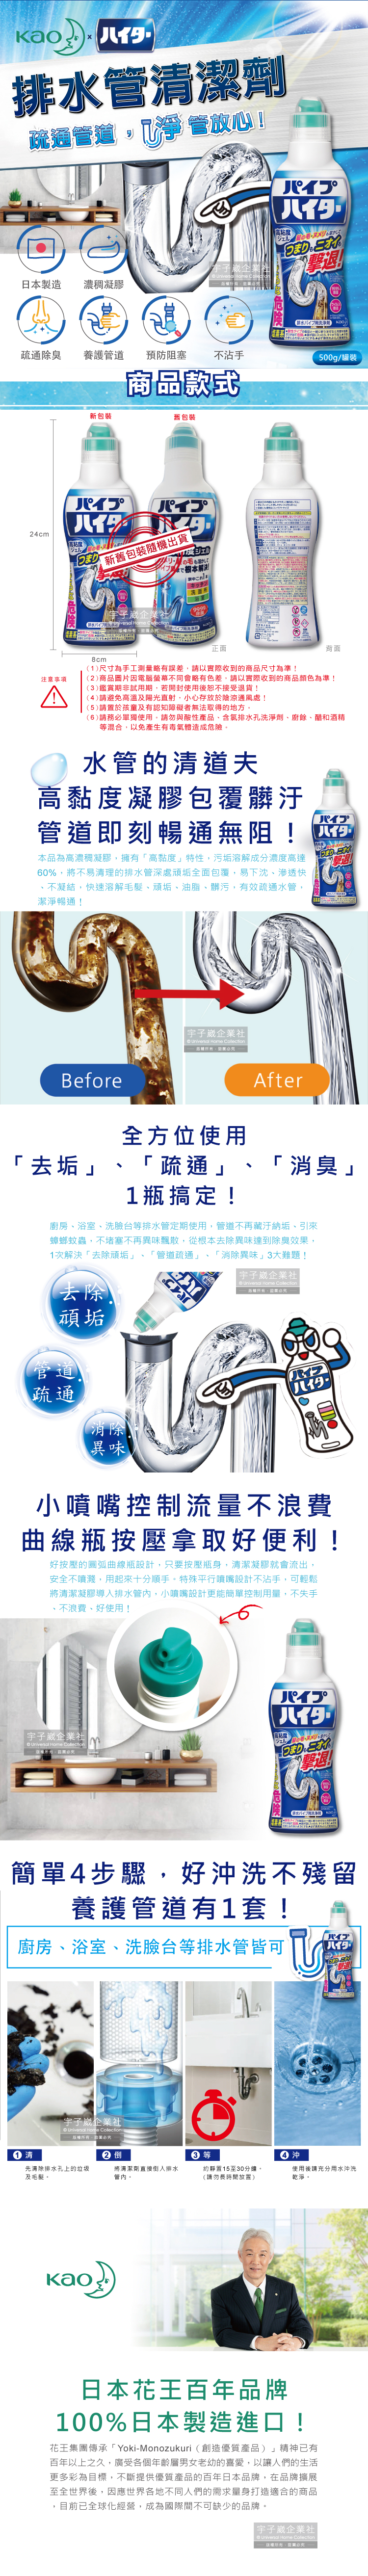 (清洁-管道)日本Kao花王-Haiter排水管清洁剂(新包装)介绍图